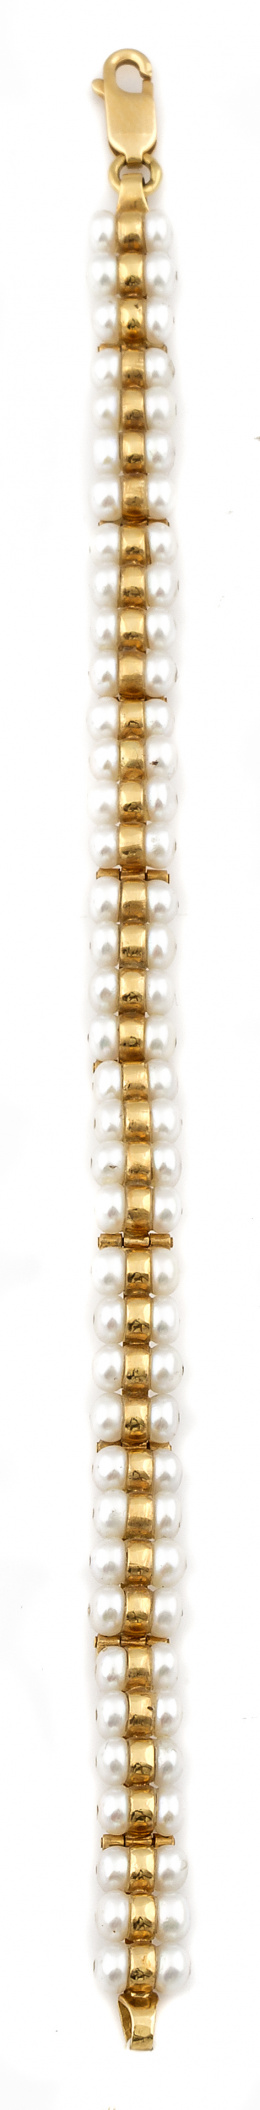 300.  Pulsera con doble fila de perlas entre aros de oro